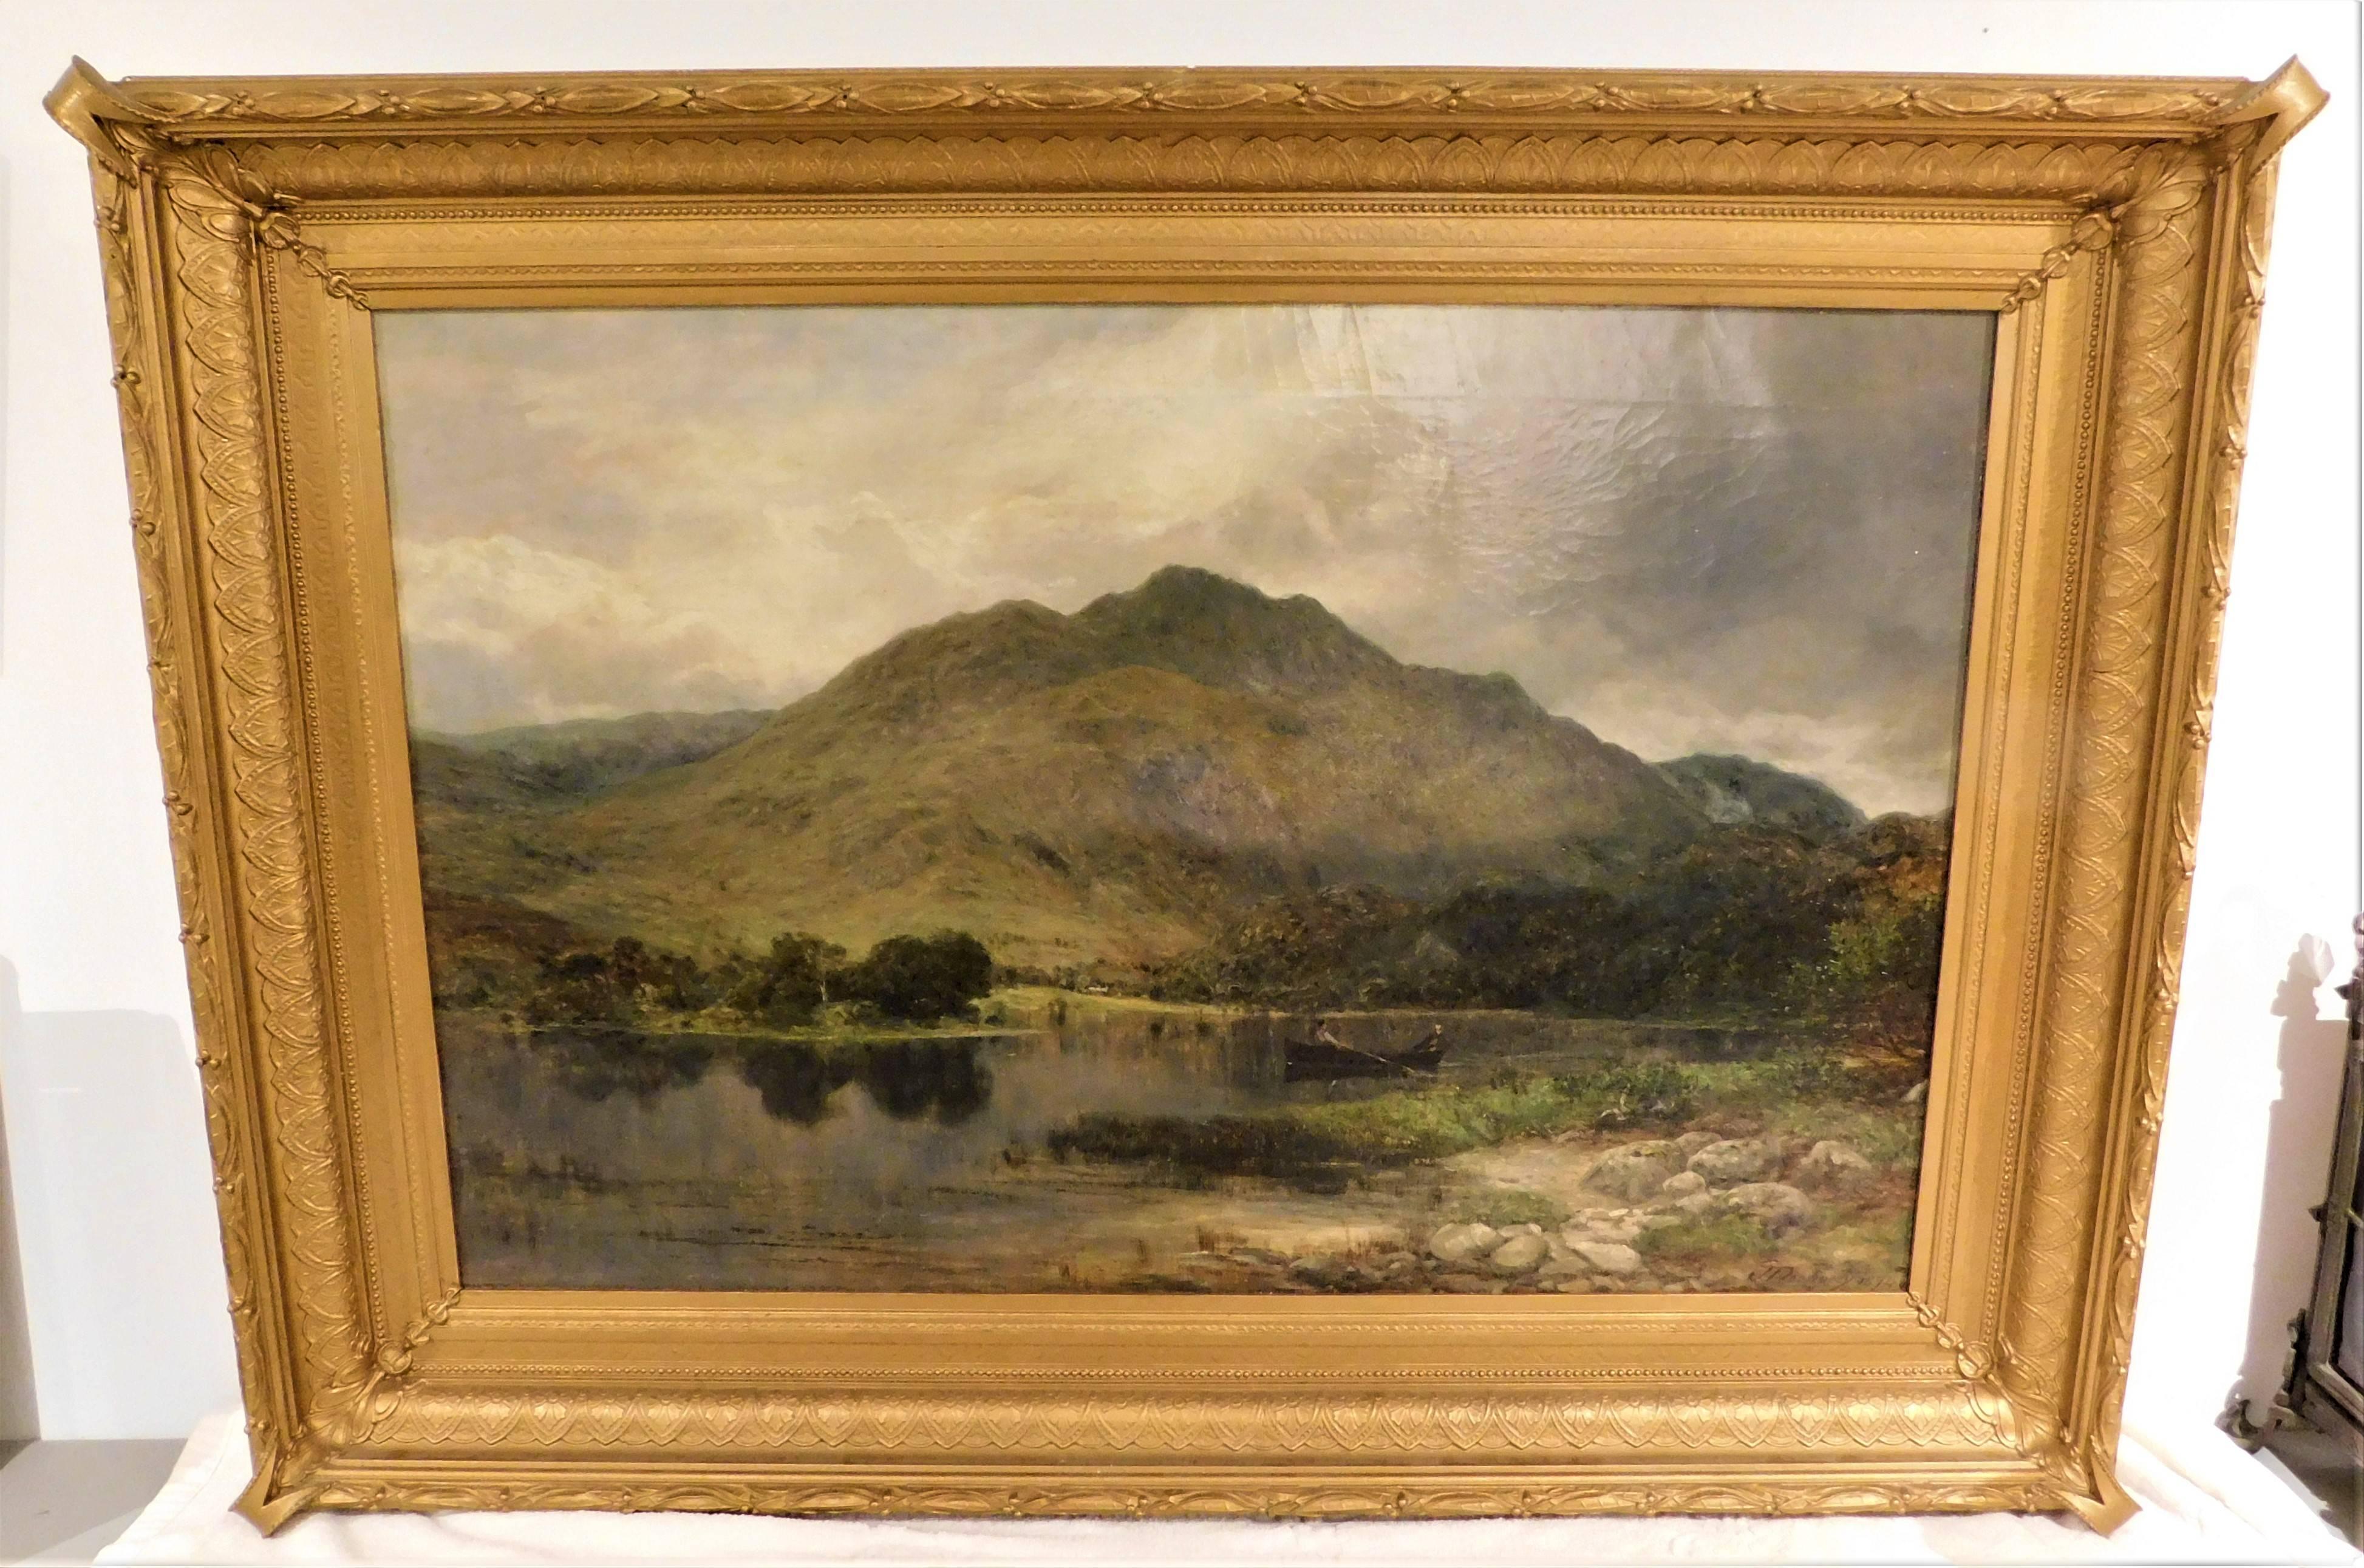 Peinture à l'huile sur toile de 1874 de l'artiste écossais James Docharty (1829-1878) dans un magnifique cadre doré d'origine.
Taille réelle de l'image : 24 pouces de large x 36,25 pouces de long x 1 pouce de profondeur
Dimensions du cadre : 32.75